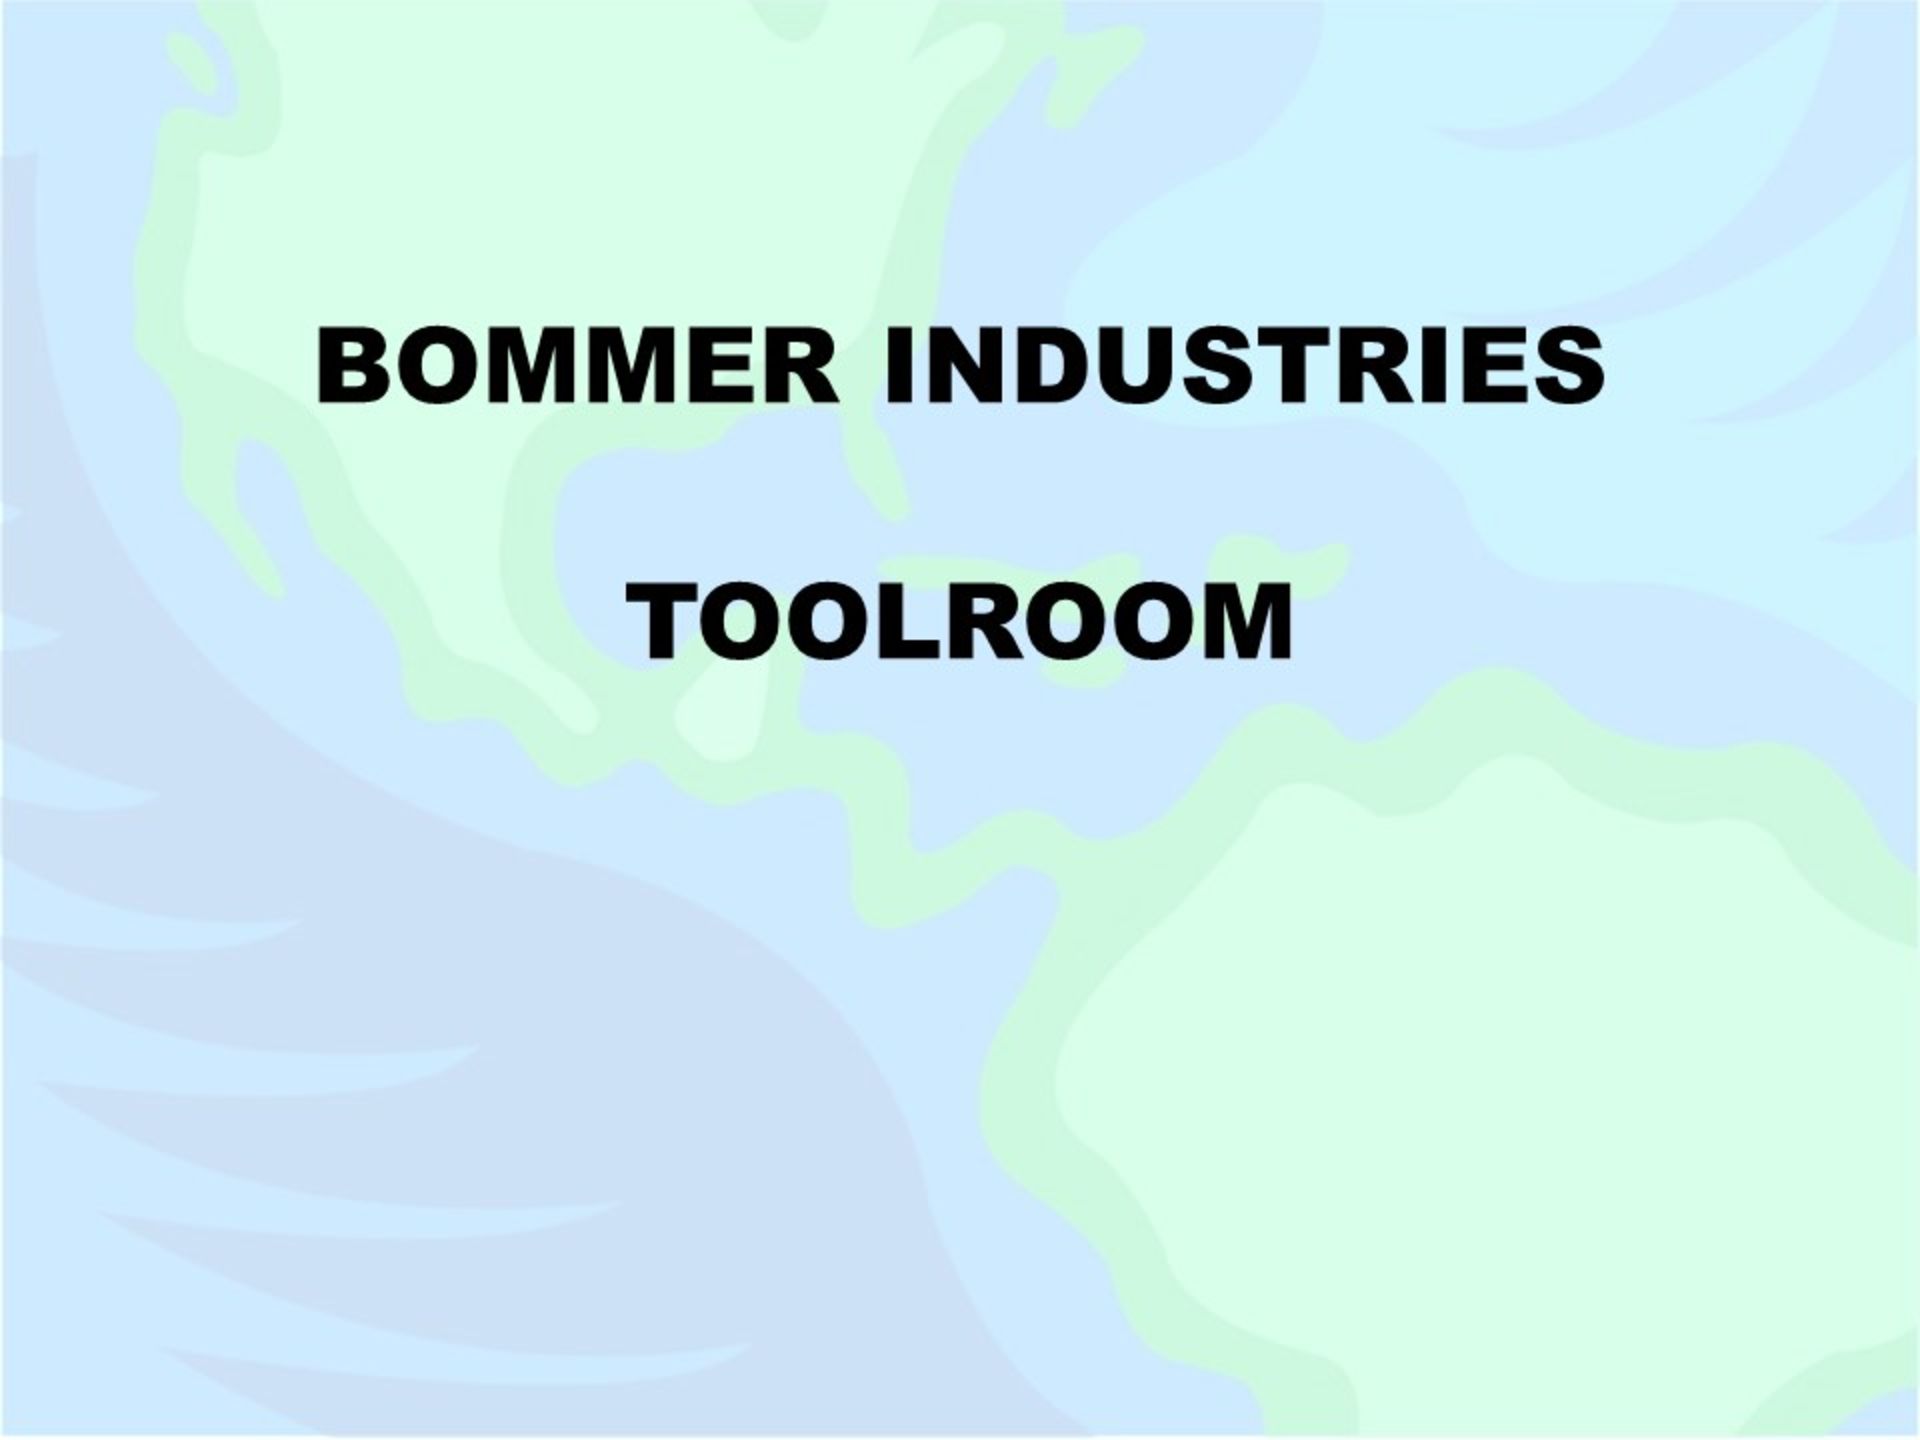 **toolroom**